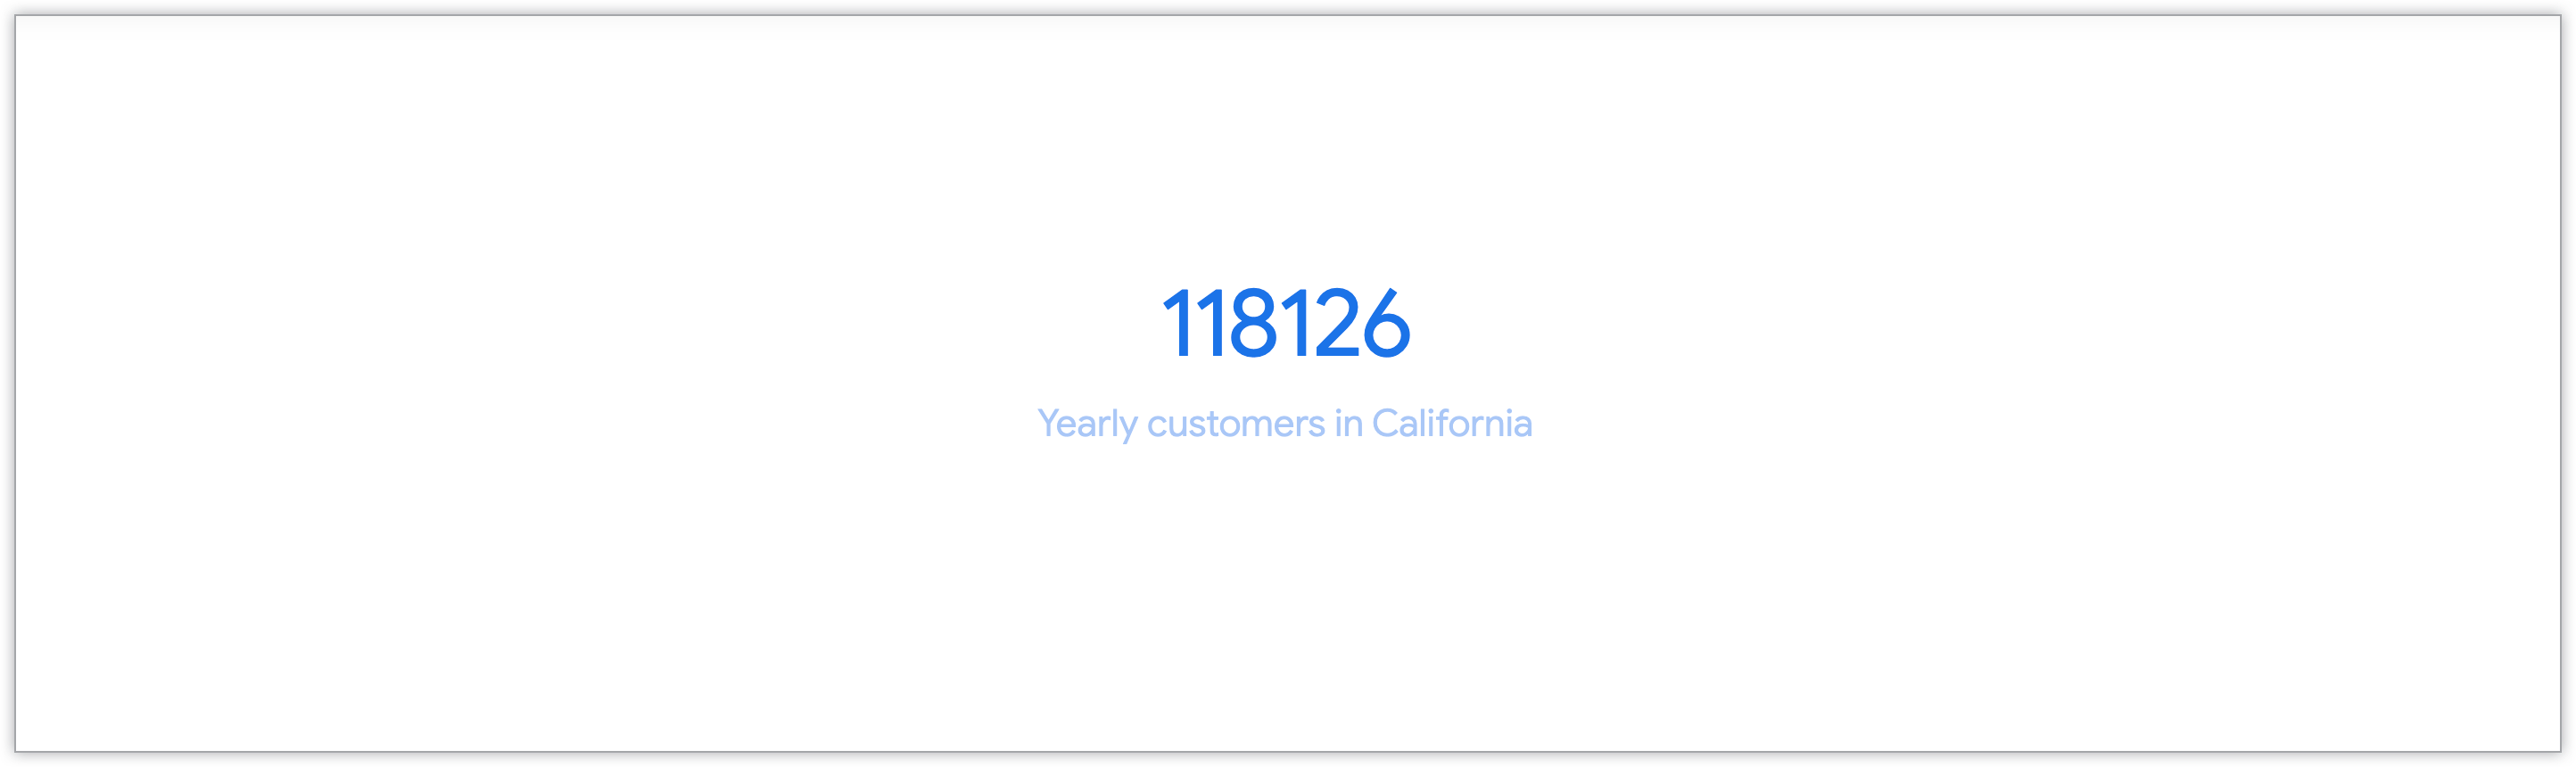 Gráfico de valor único que mostra o número de clientes anuais da Califórnia.